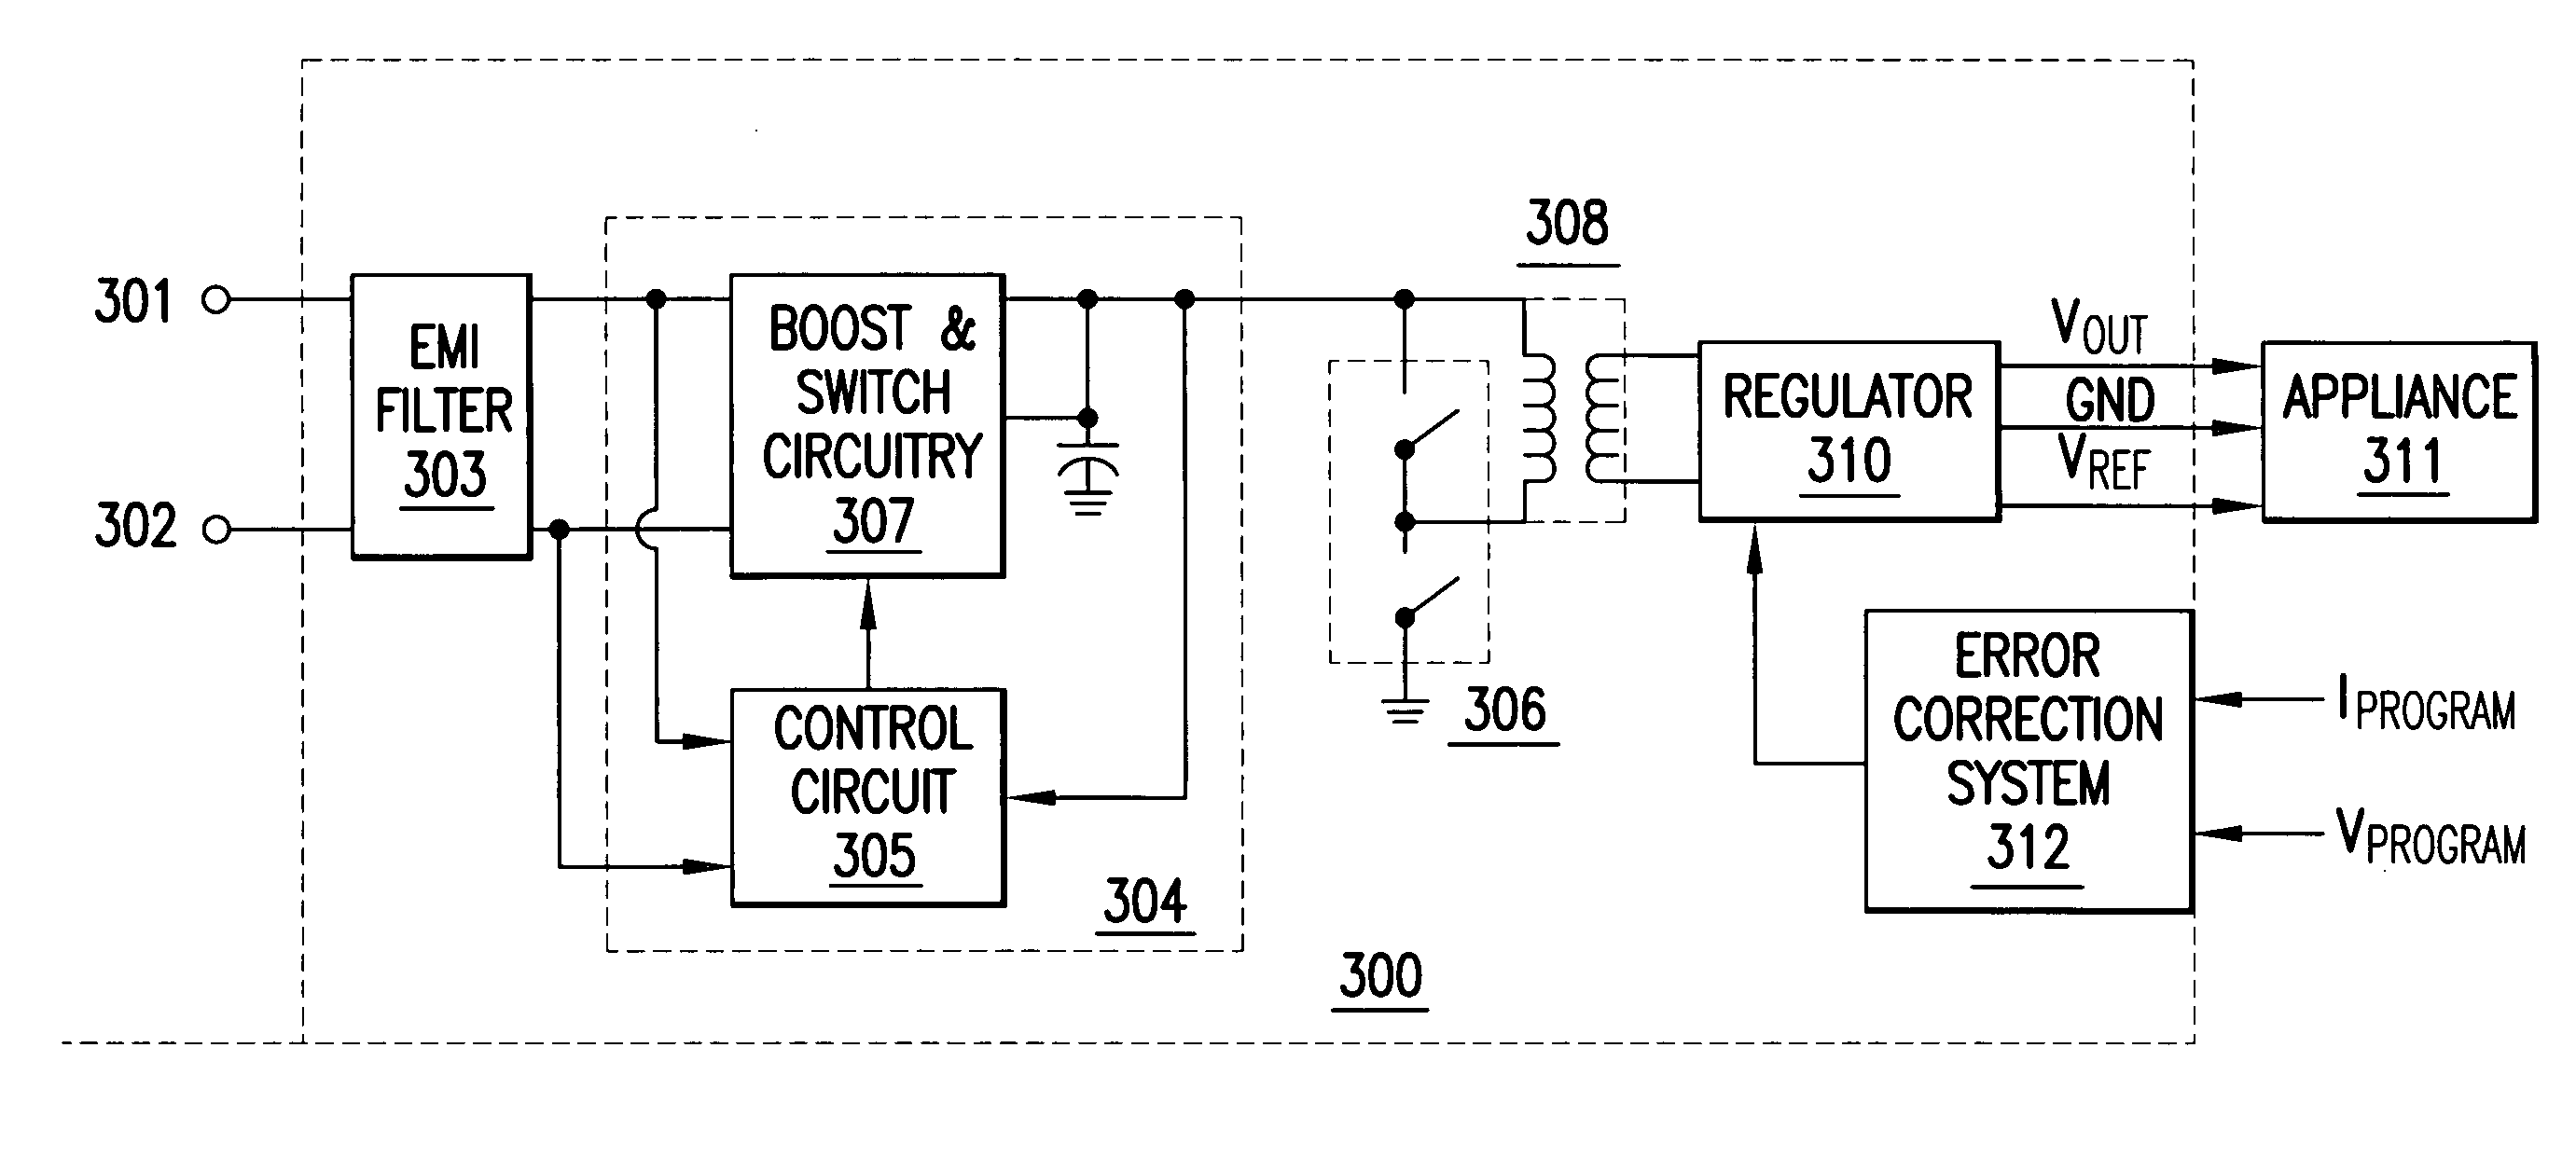 Power factor correction circuits